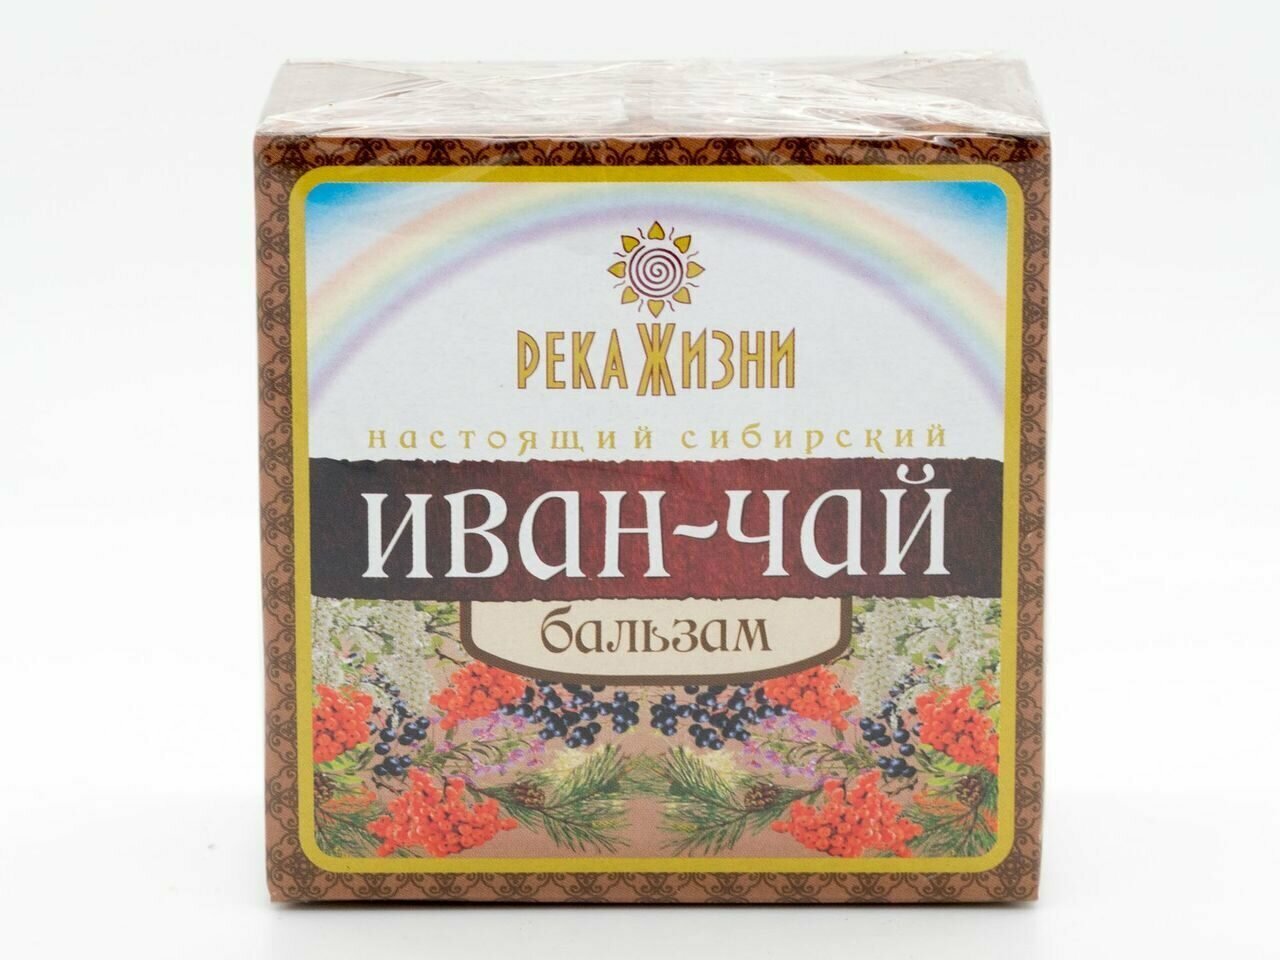 Иван-чай "Бальзам" (Река Жизни), 60 г